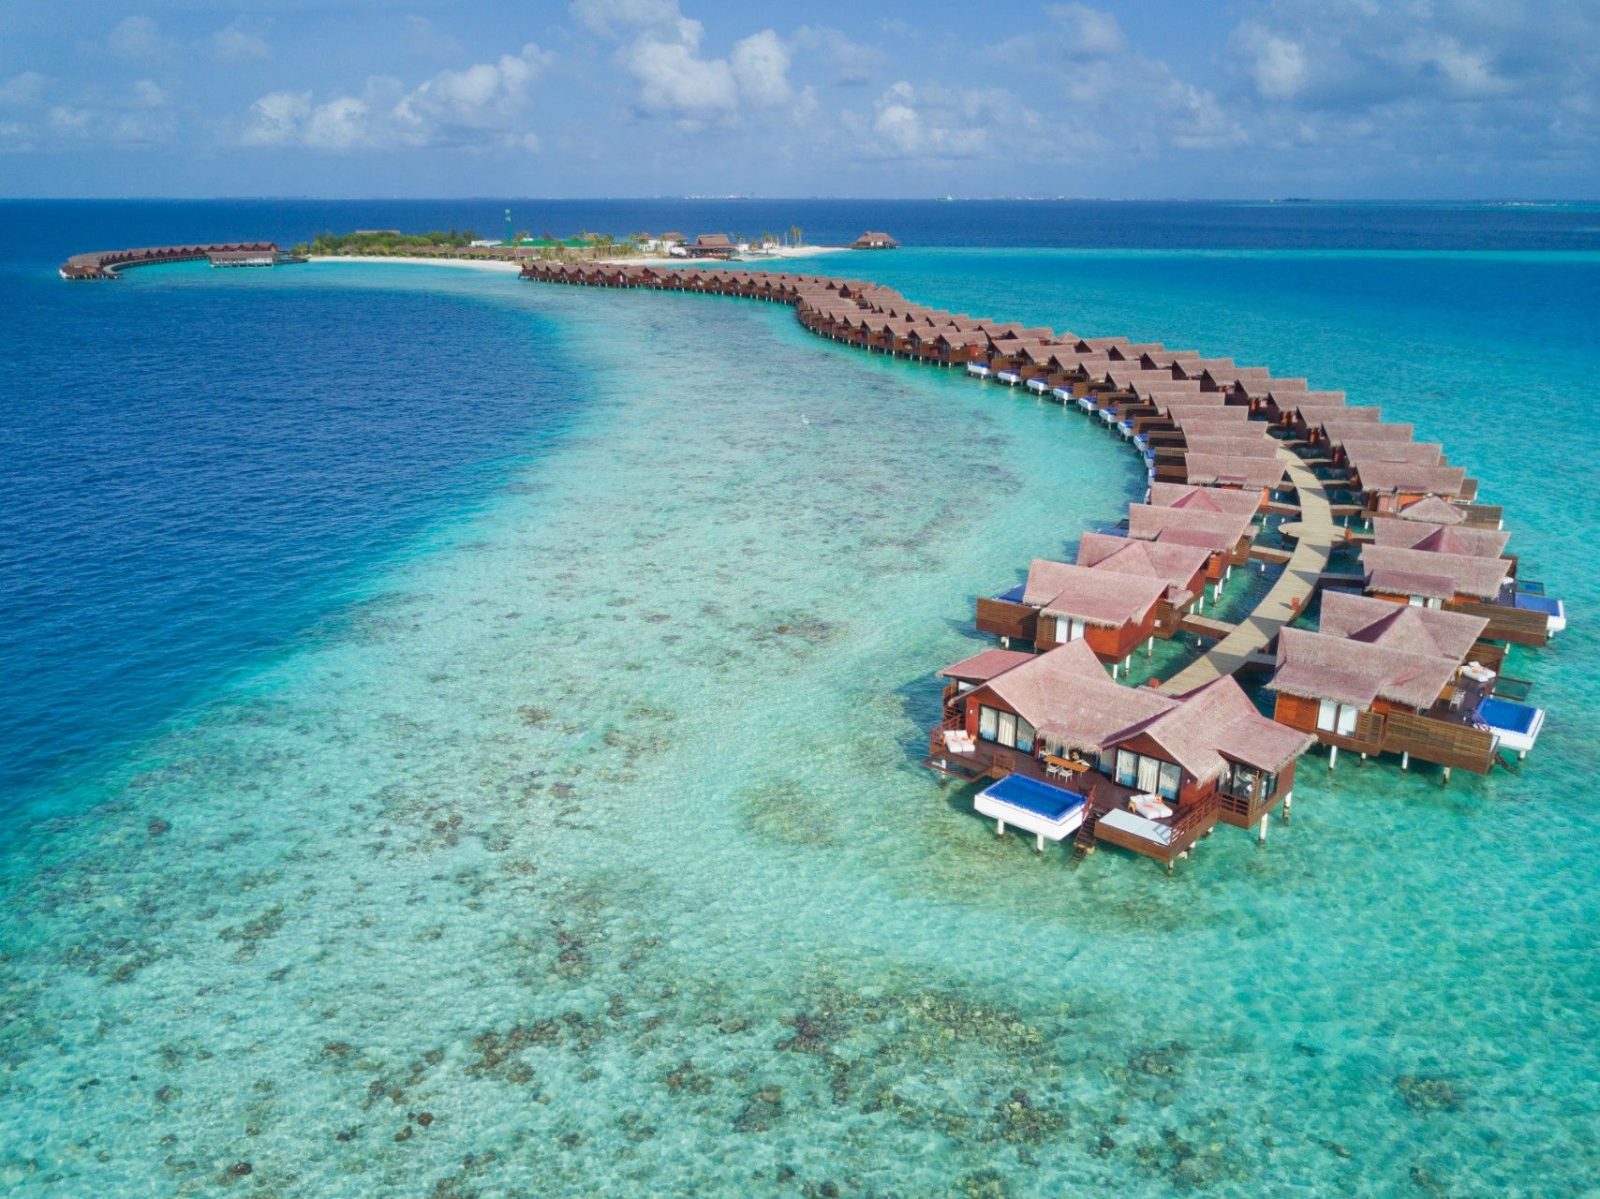 visit maldives website